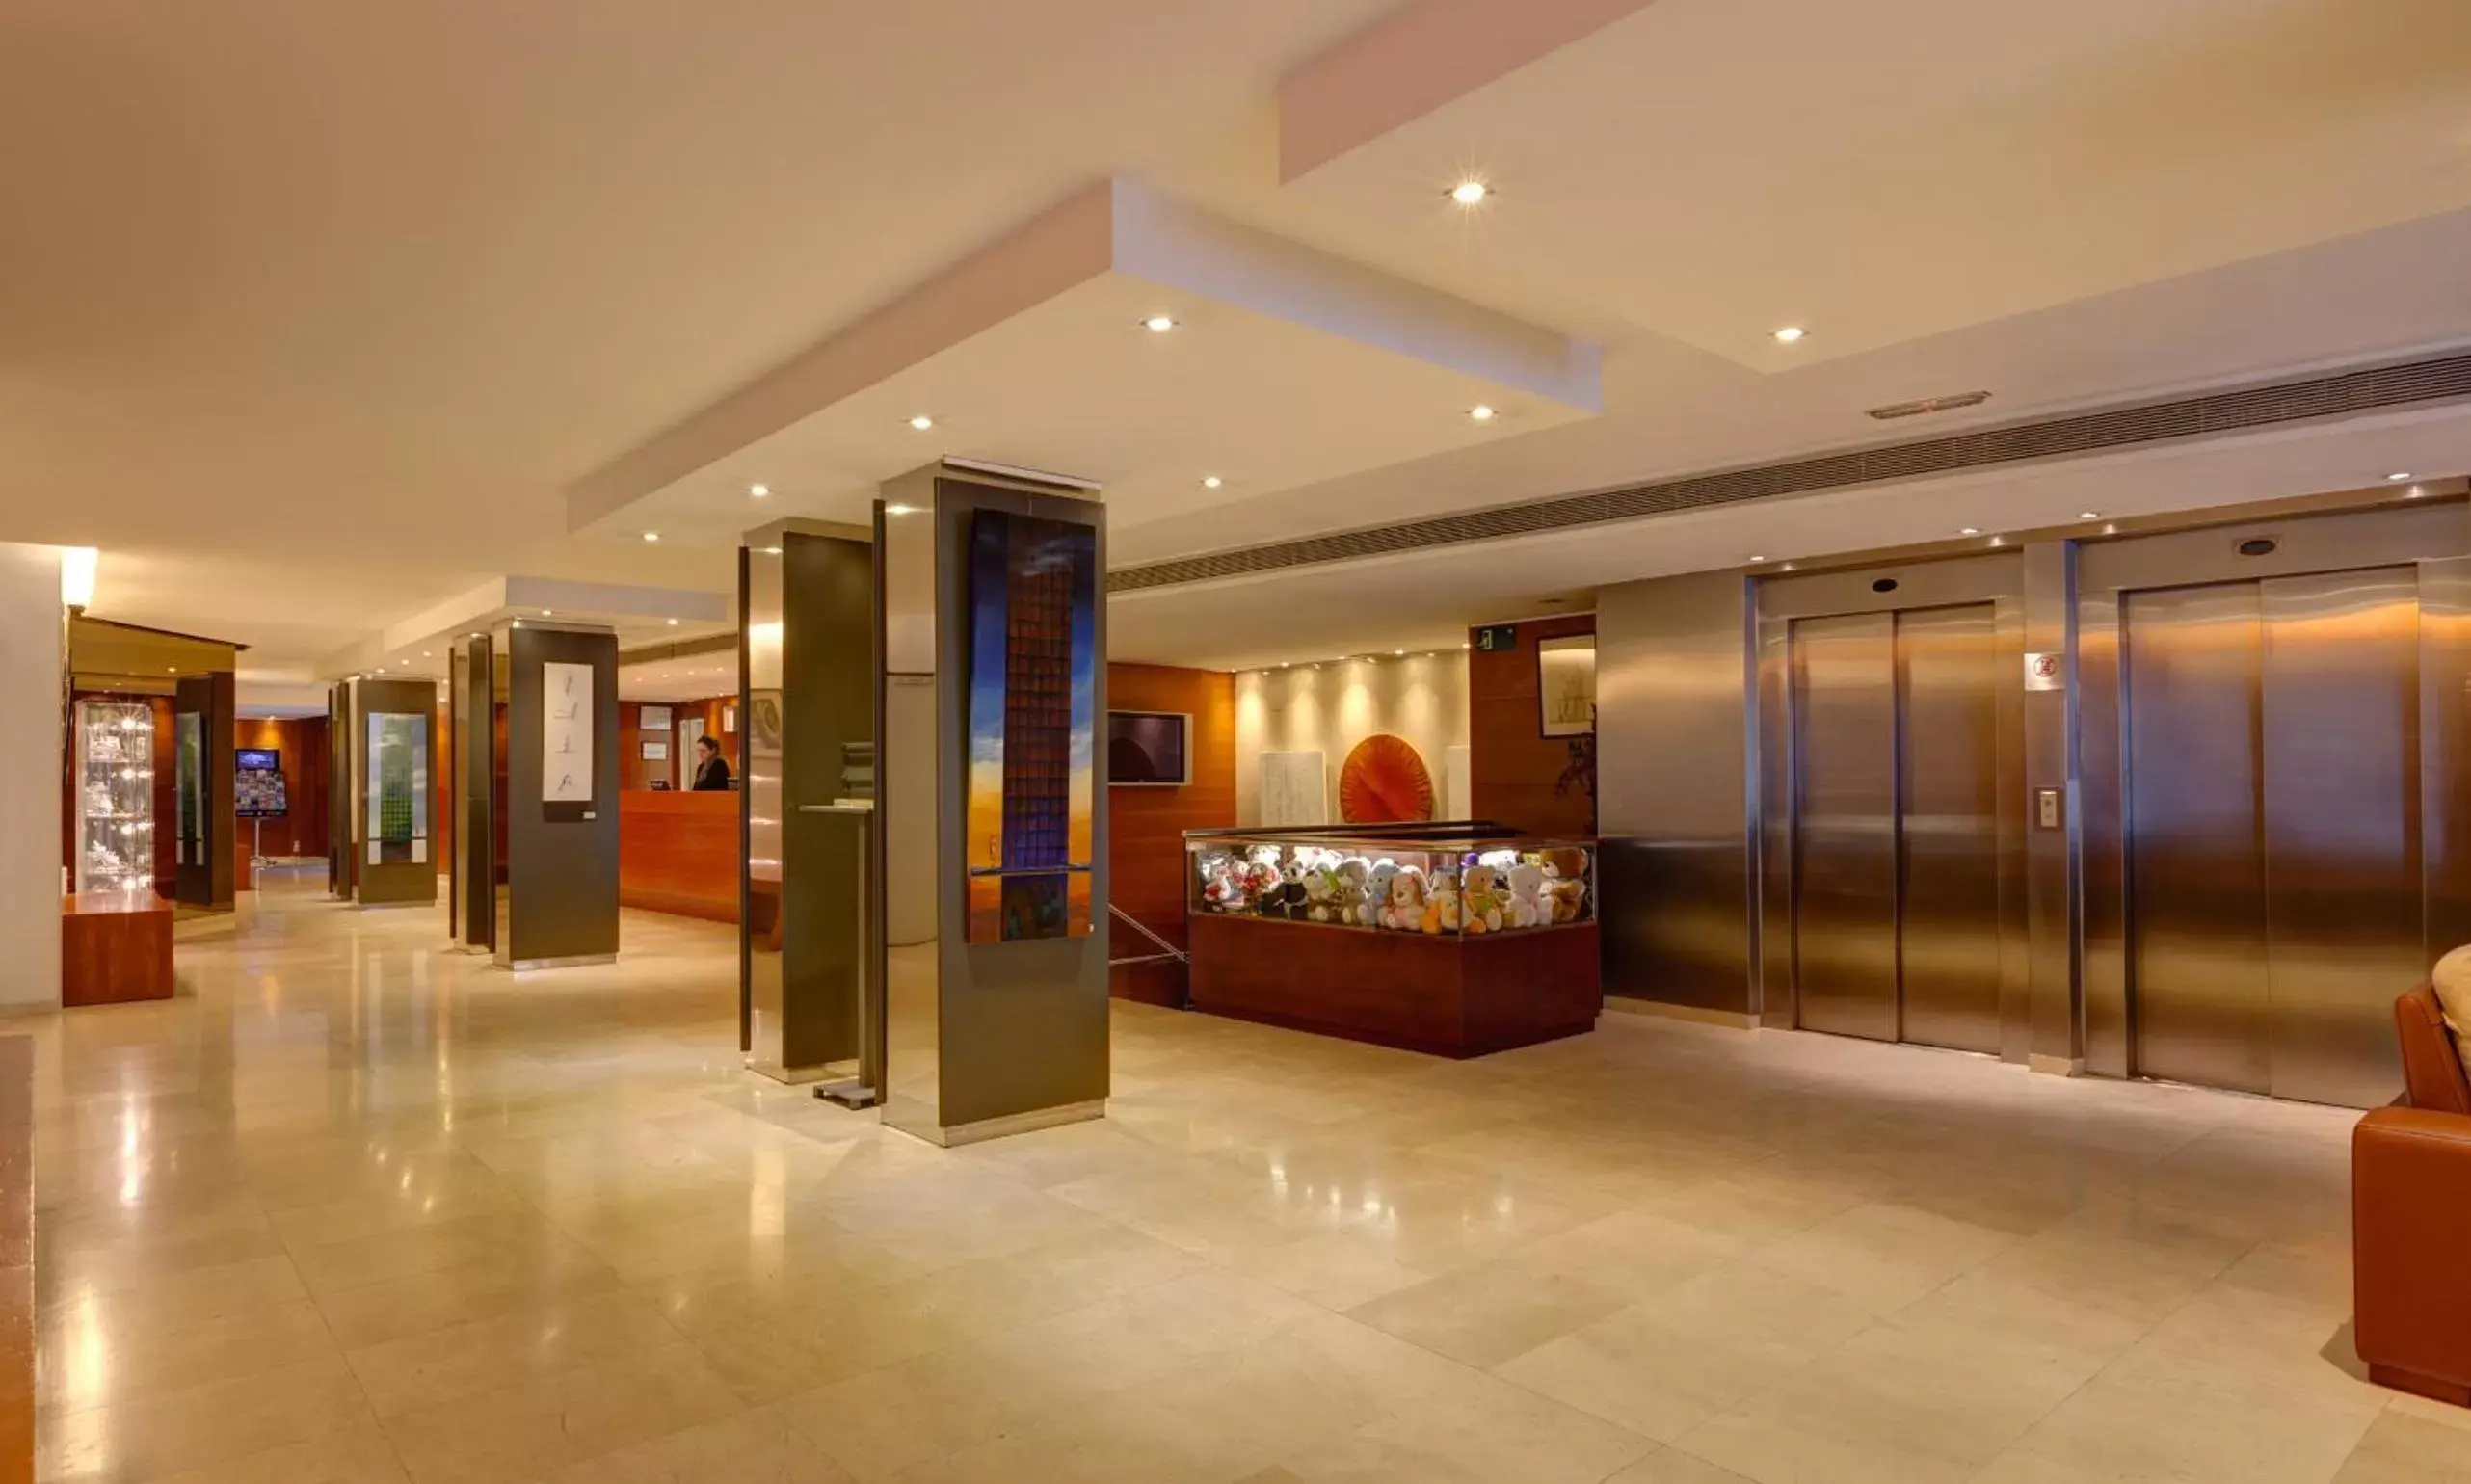 Area and facilities, Lobby/Reception in Acevi Villarroel